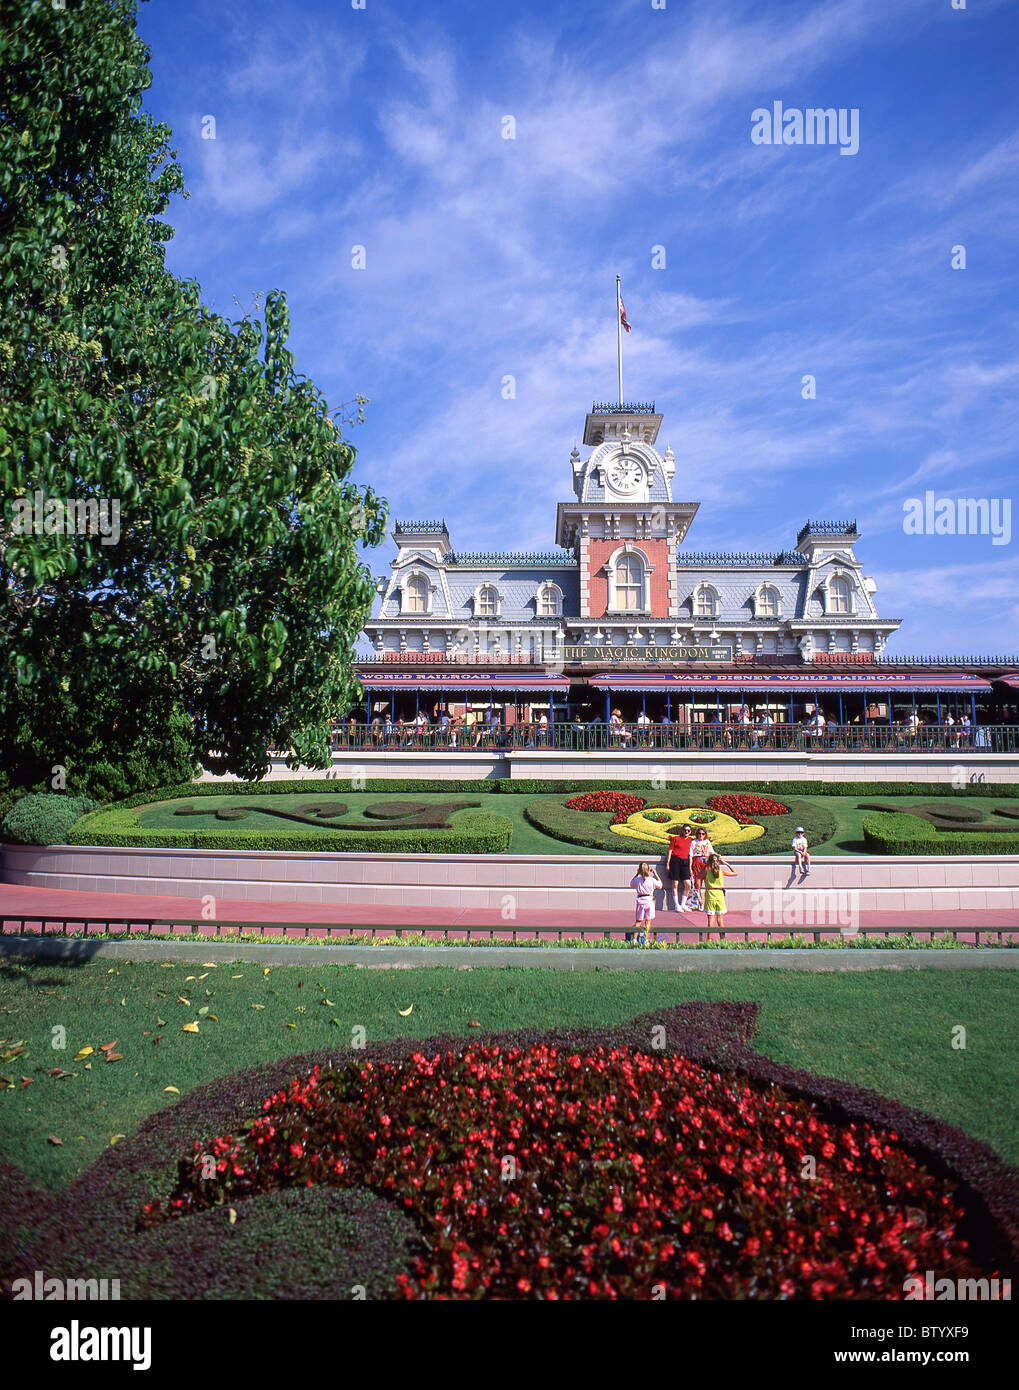 Entrée du parc, le Walt Disney World, Orlando, Floride, États-Unis d'Amérique Banque D'Images